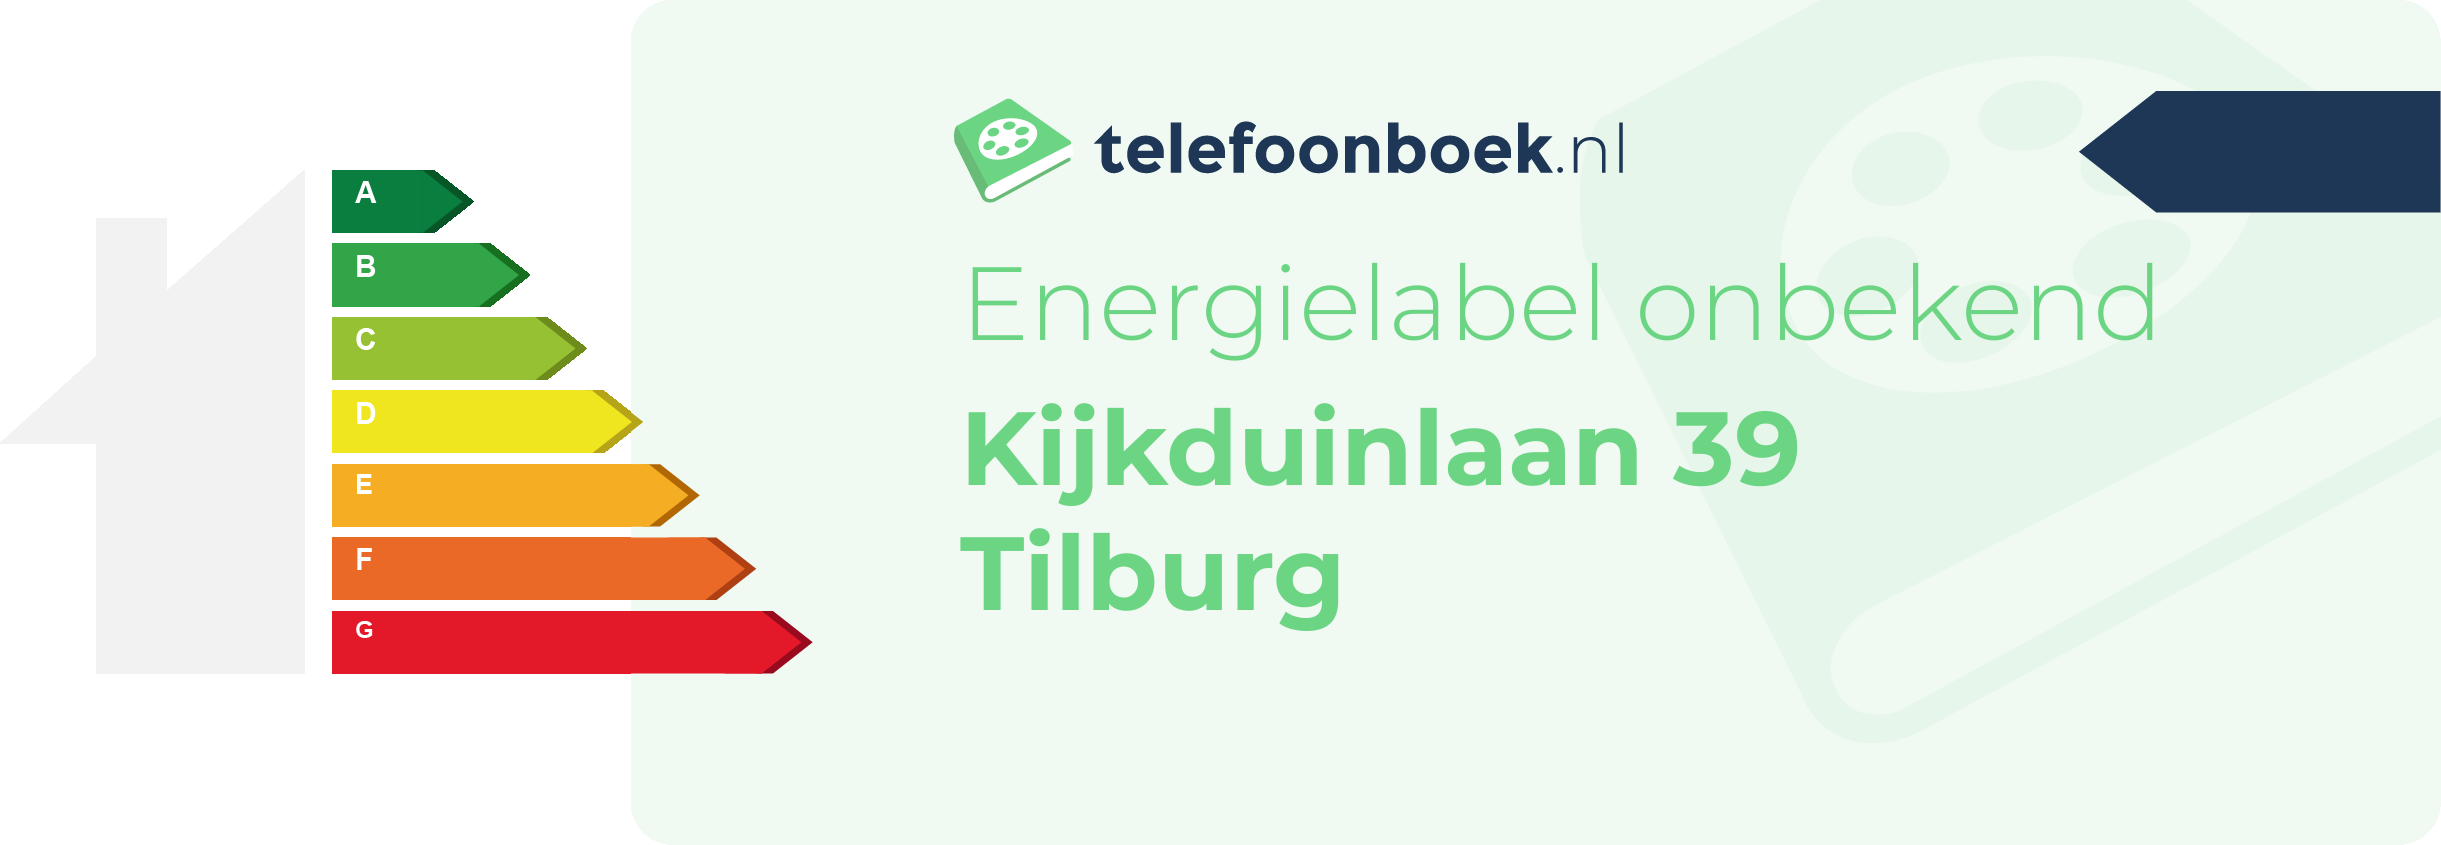 Energielabel Kijkduinlaan 39 Tilburg